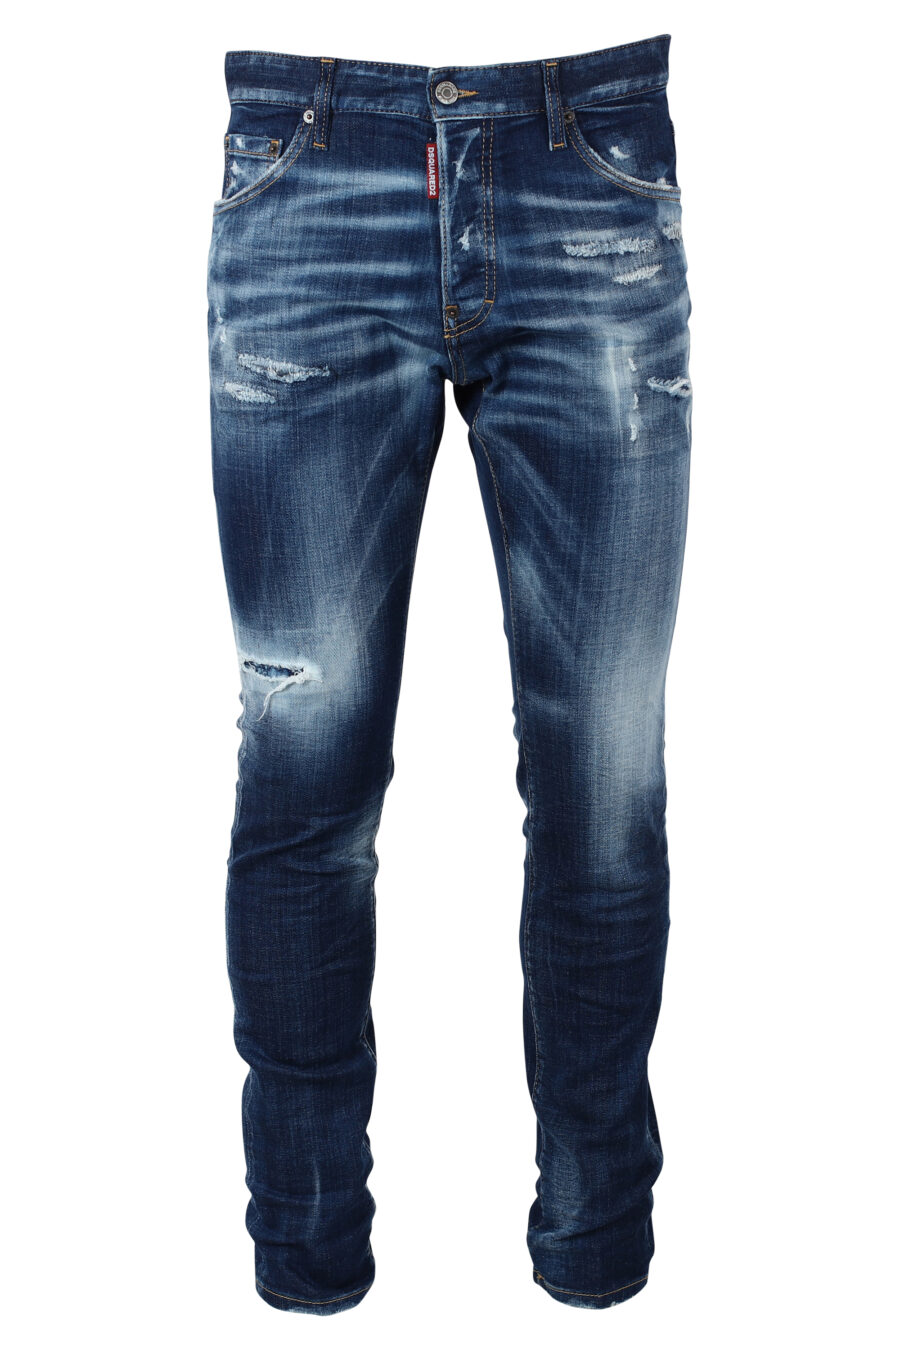 Jeans bleus portés "cool guy jean" - IMG 9872